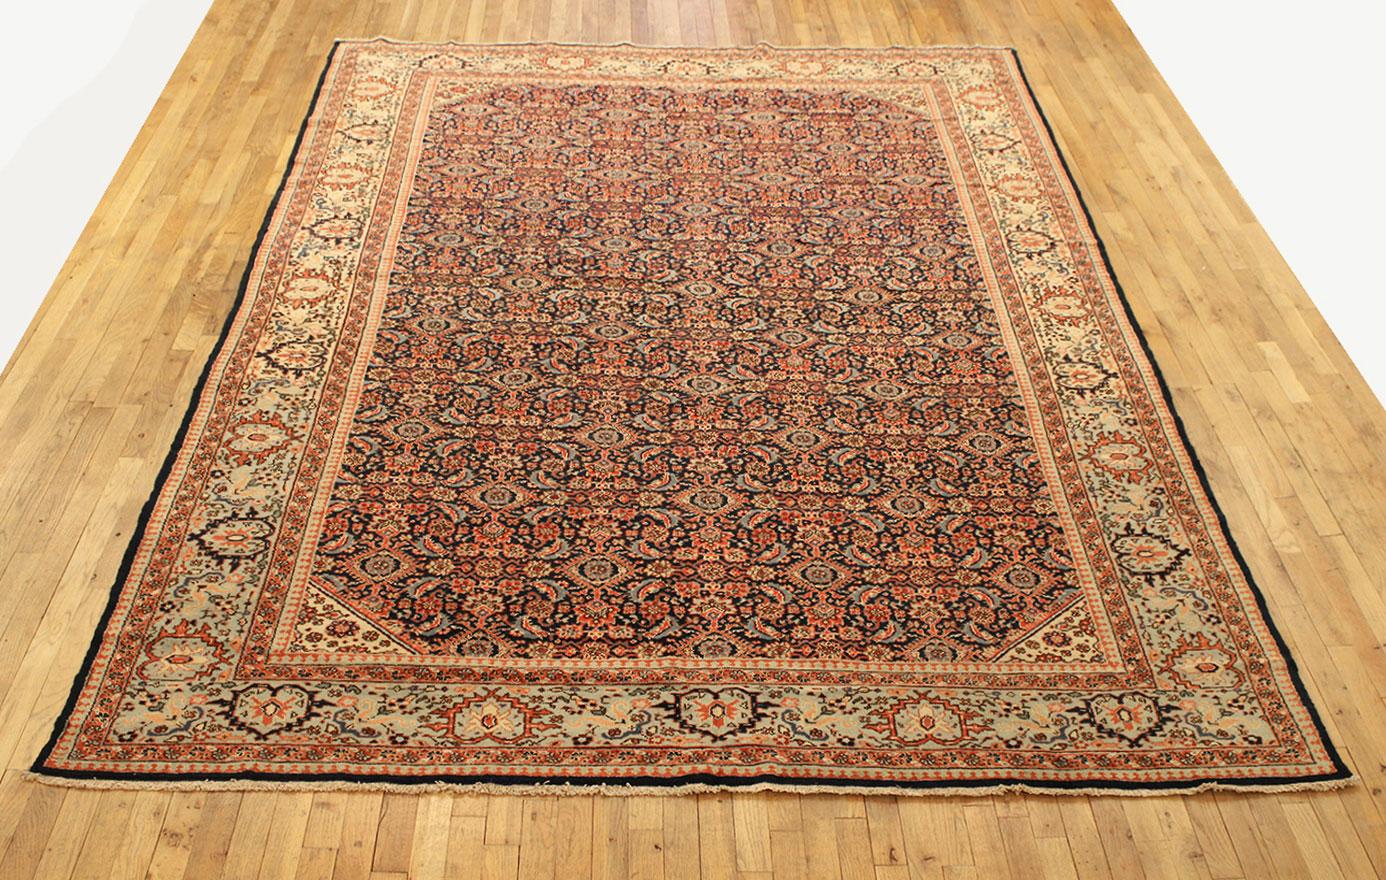 Antique Persian Tabriz Oriental carpet, circa 1920, Room Sized

An antique Persian Tabriz oriental carpet, circa 1920. Size: 11'1